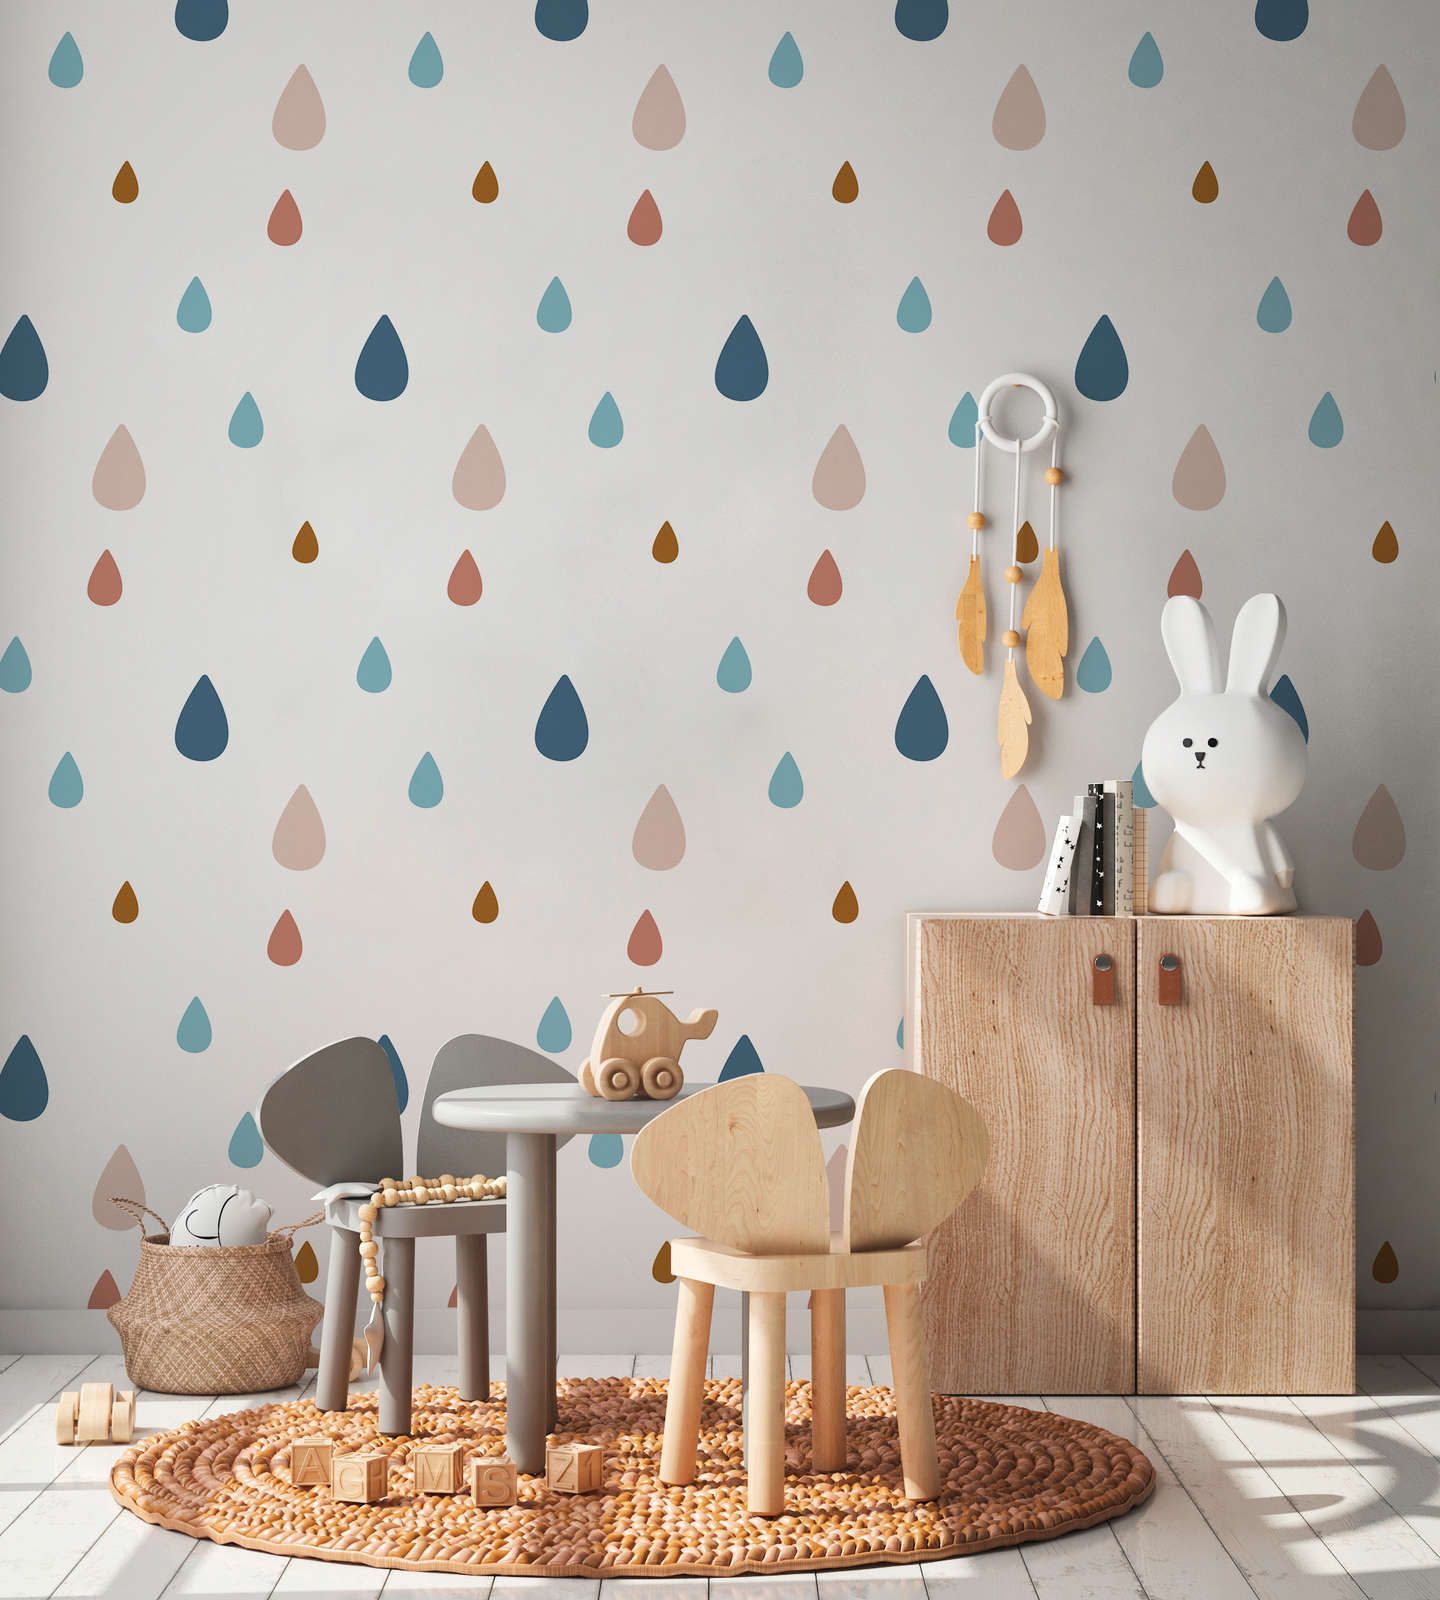             Papel pintado fotográfico para habitación infantil con gotas de agua de colores - Material sin tejer liso y ligeramente brillante
        